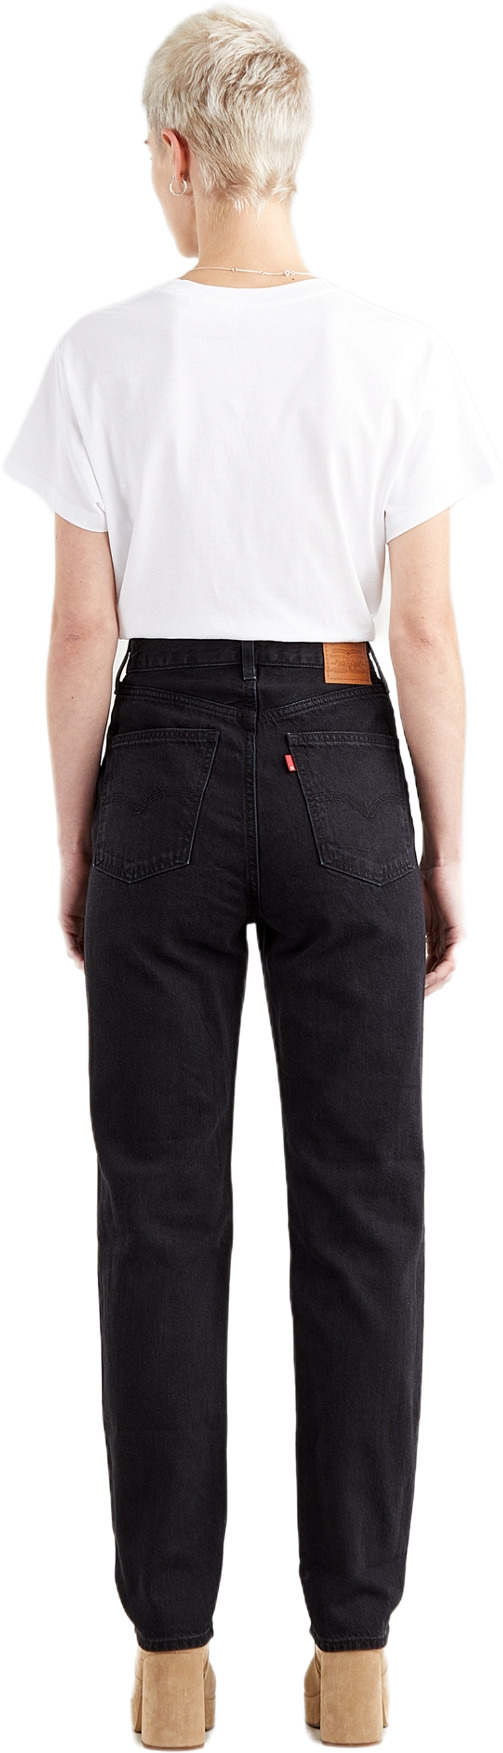 Джинсы Levis Women 70S High Slim Straight Jeans (A0898-0007) купить за  17500 руб. в интернет-магазине JNS